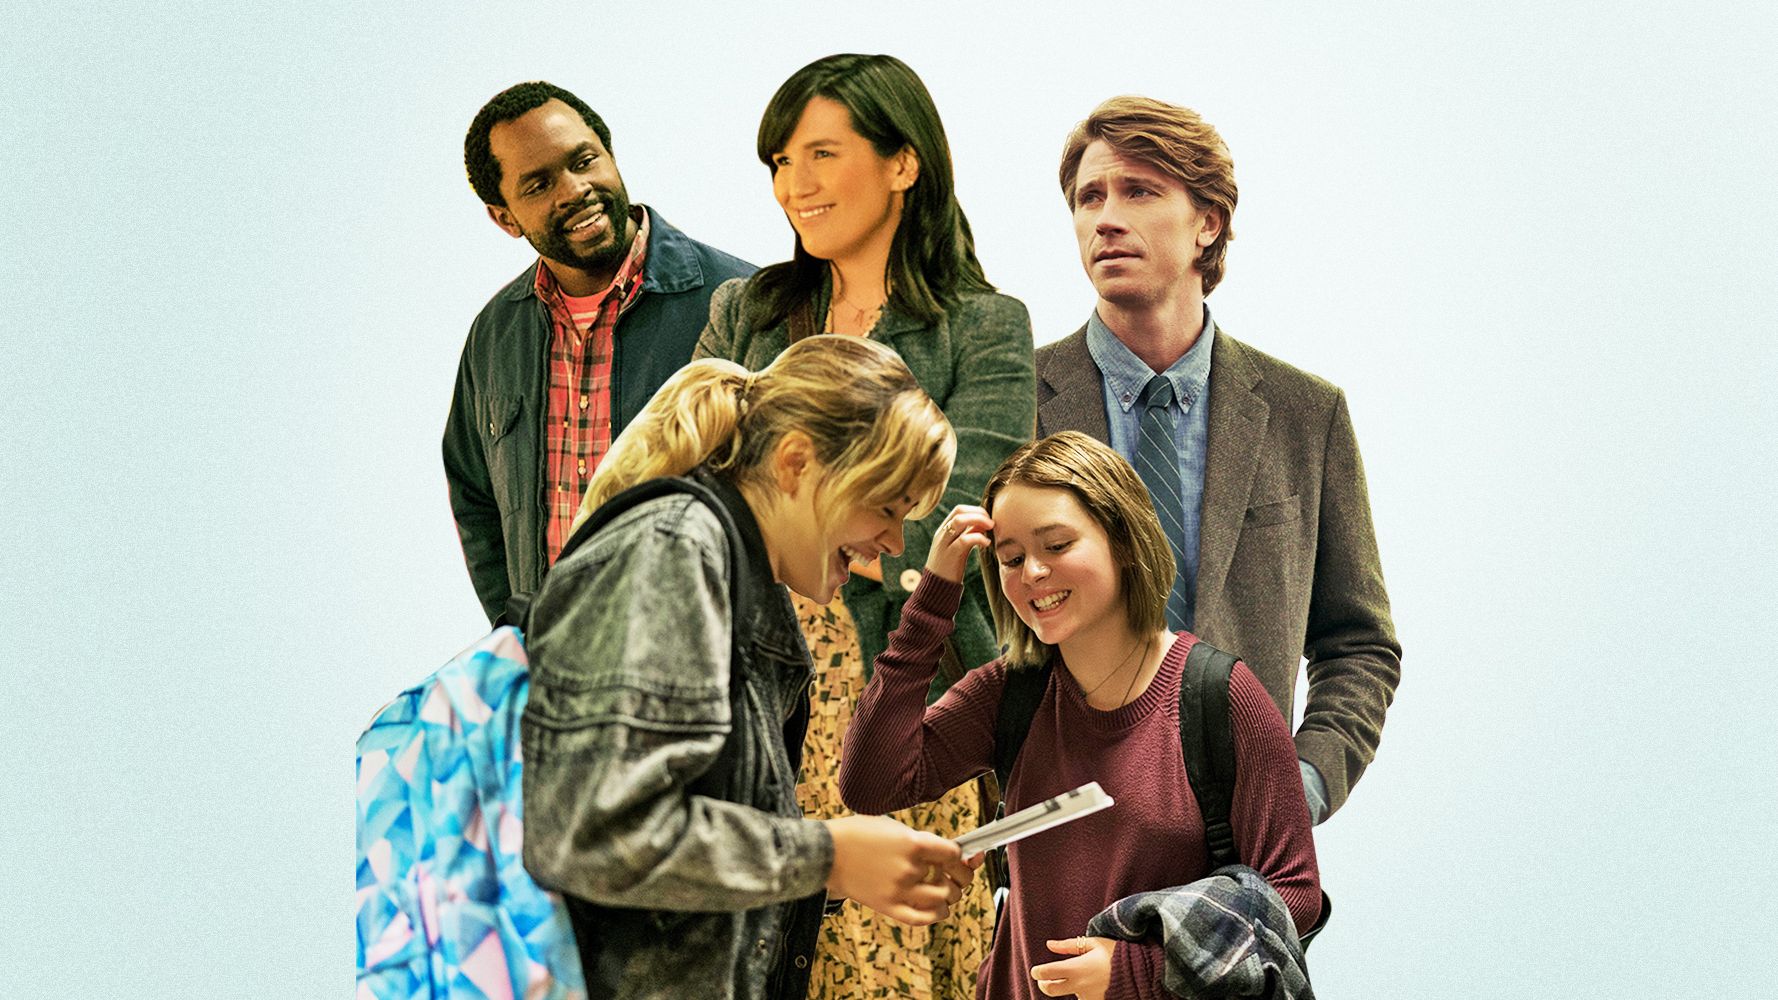 Modern Love season 2 starring Kit Harington - spoiler-free review